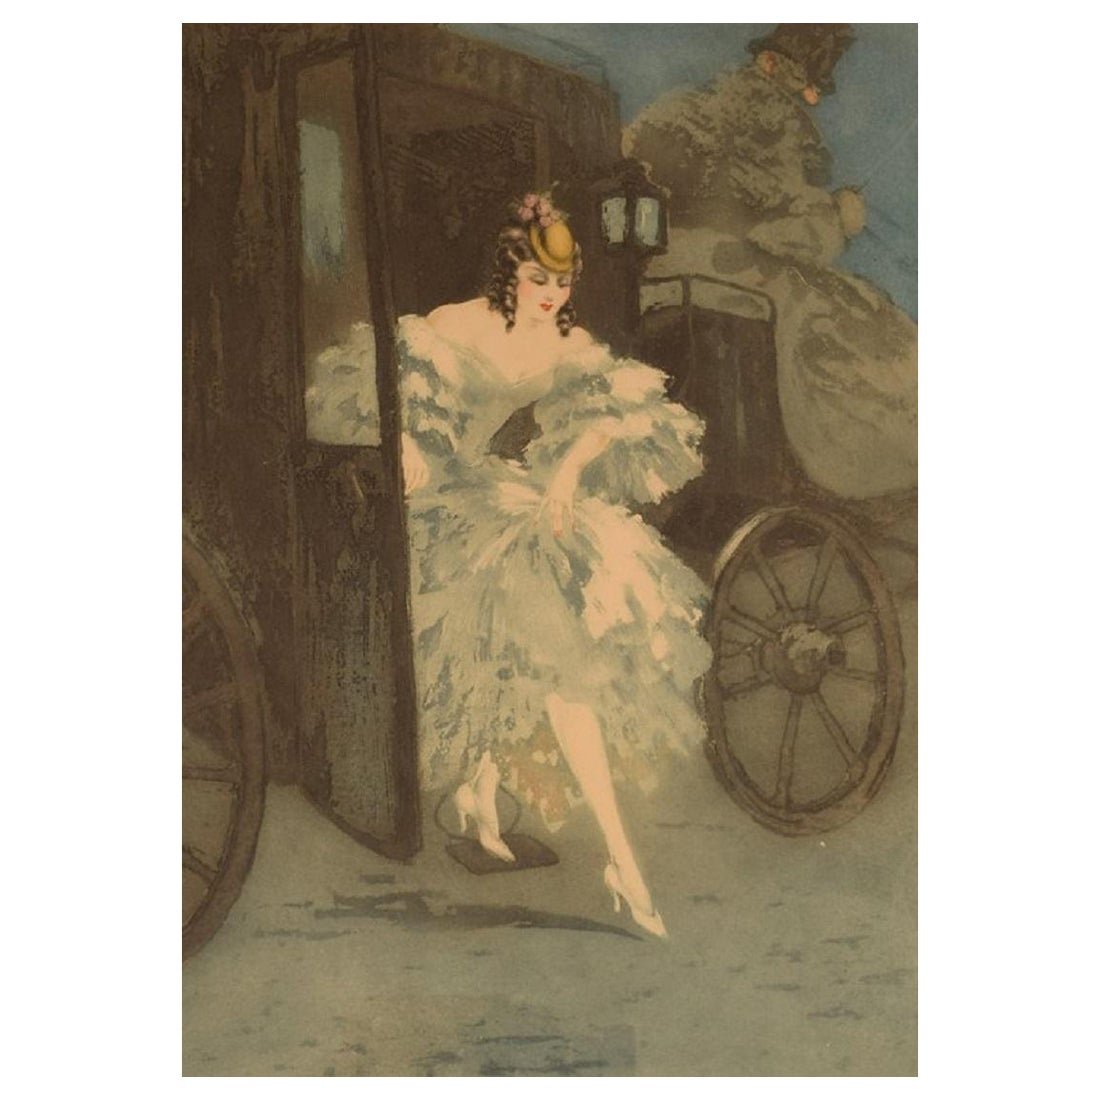 Louis Icart, eau-forte sur papier, « Arrival », environ 1920